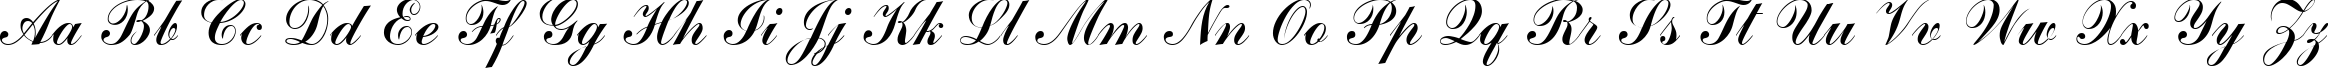 Пример написания английского алфавита шрифтом CommScriptTT